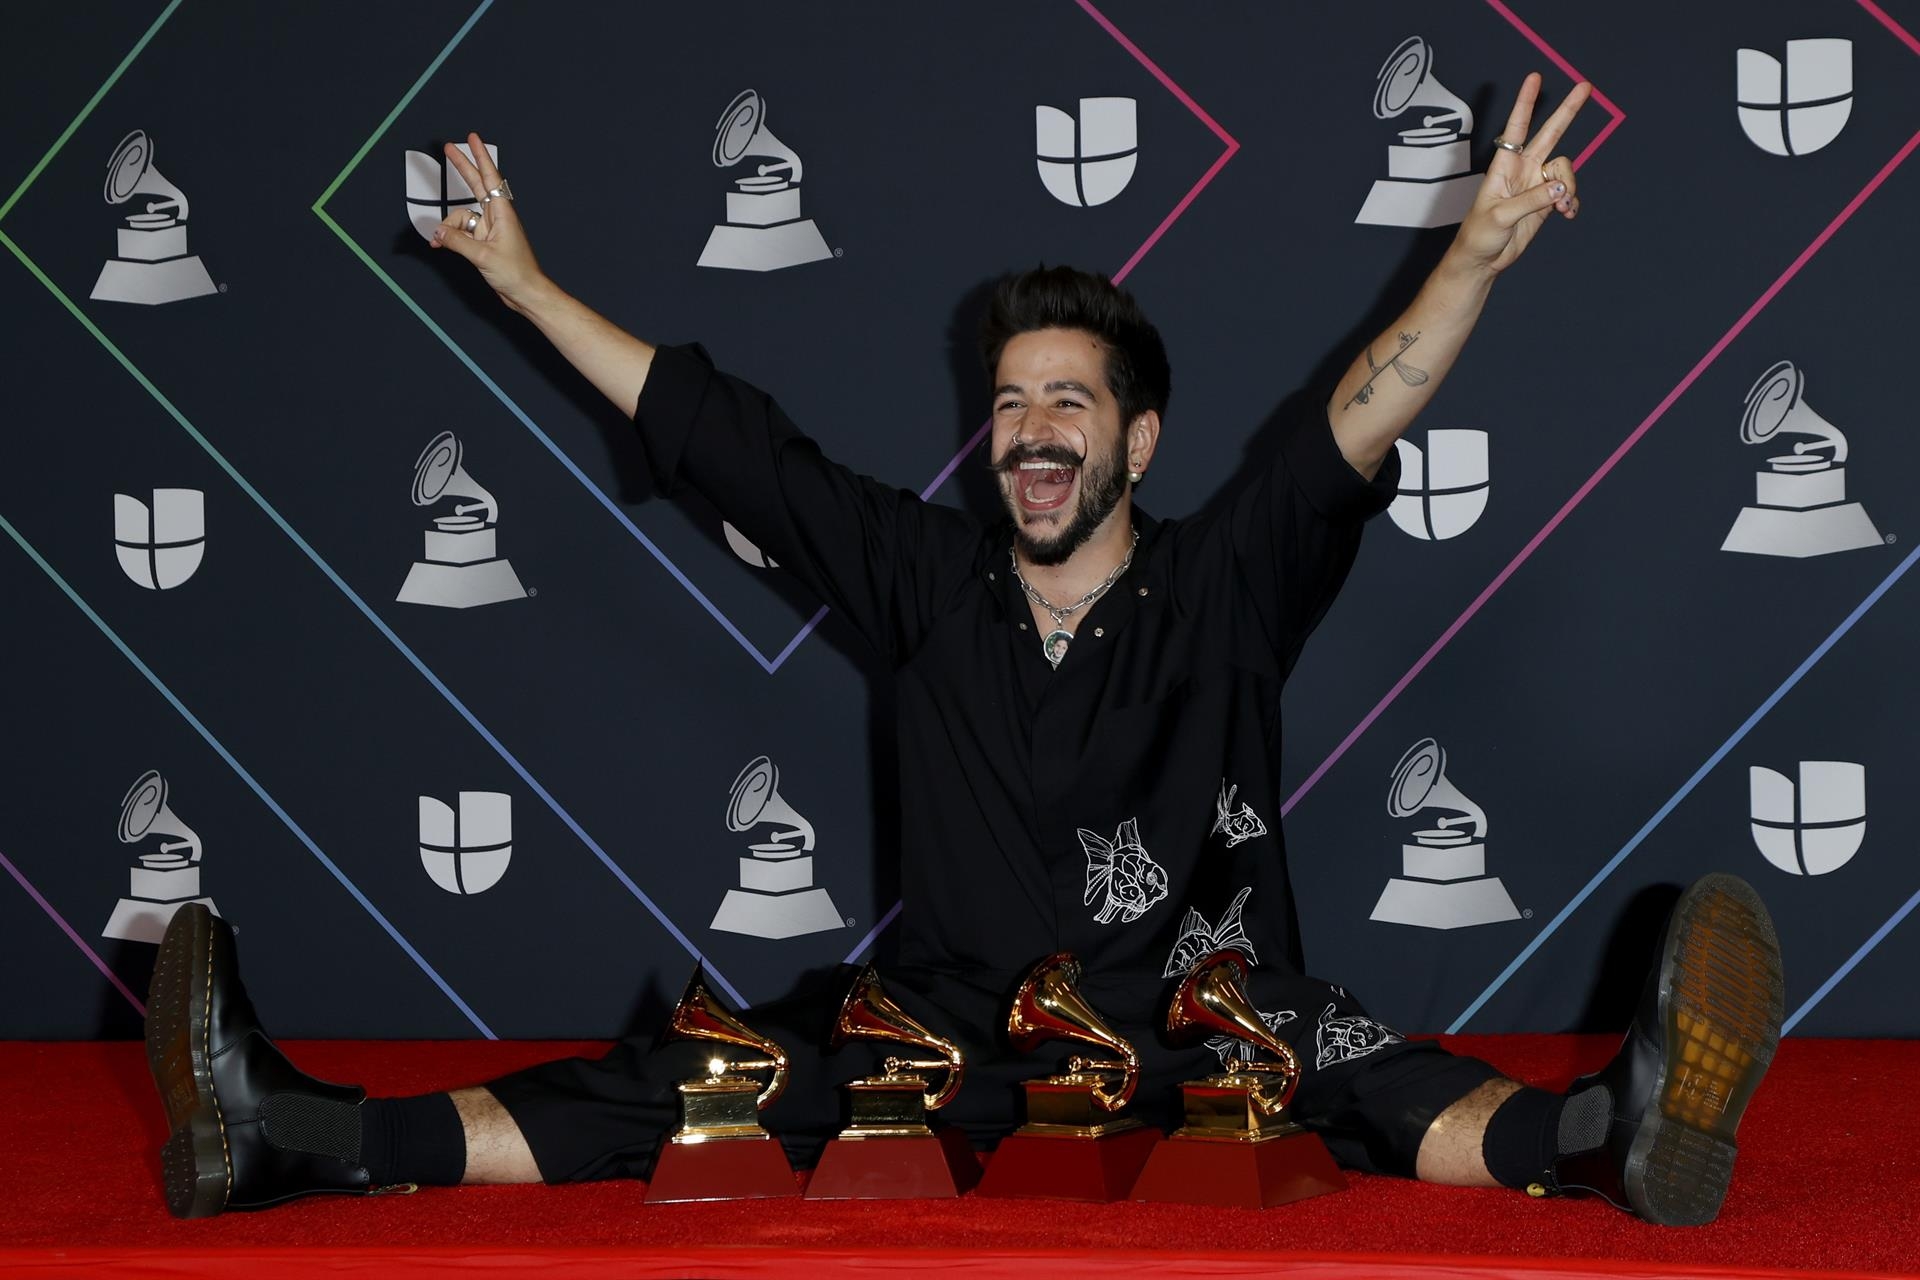 Rubén Blades gana Álbum del Año - noticiacn